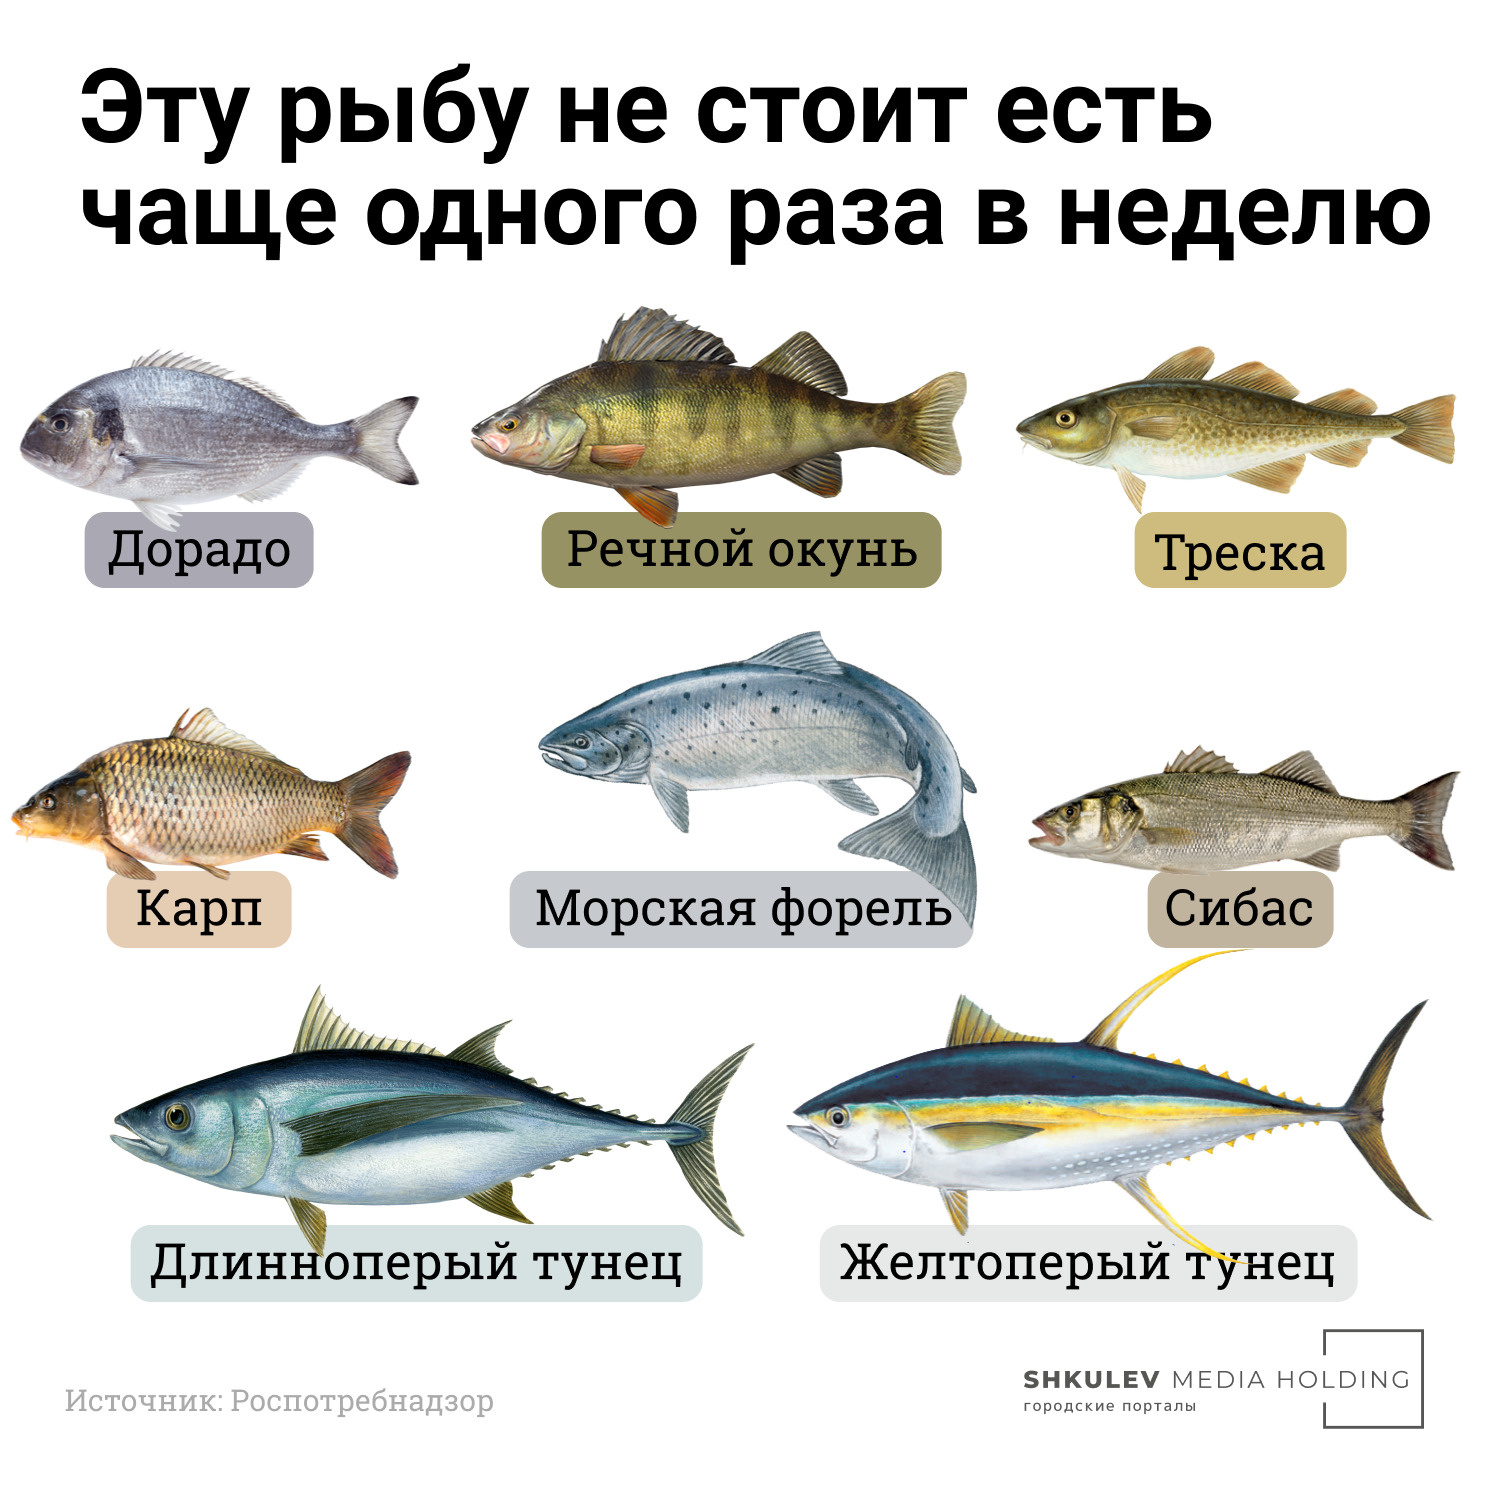 Объясняем на картинках: какая рыба самая полезная, какая самая вредная и кому ее вообще нельзя диета,еда,питание,полезные продукты,рыба